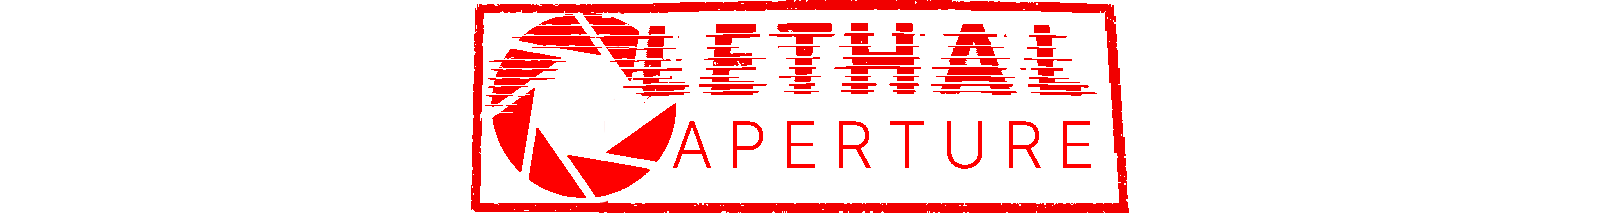 Lethal aperture logo